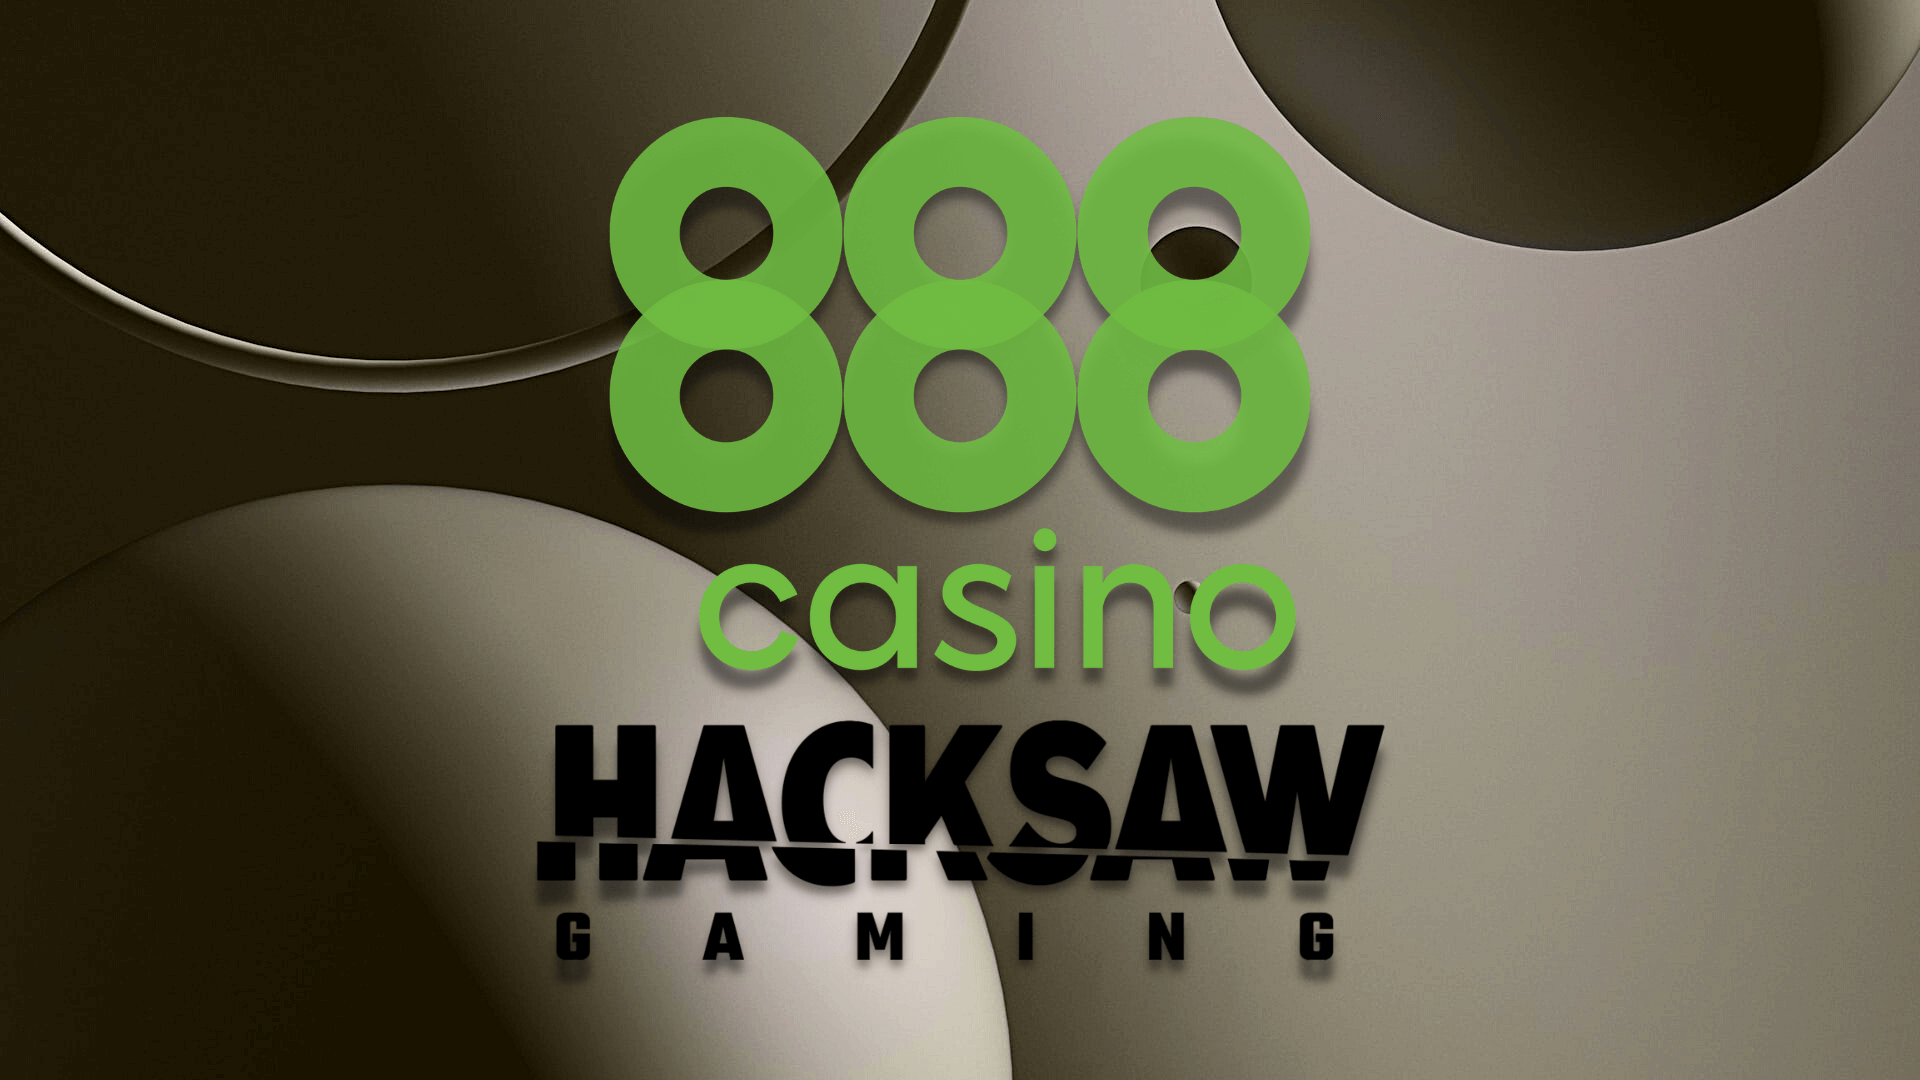 Hacksaw Gaming finalmente in Italia: partnership con 888, ma il provider non si fermerà qui. Nelle prossime settimane gli annunci di nuovi accordi